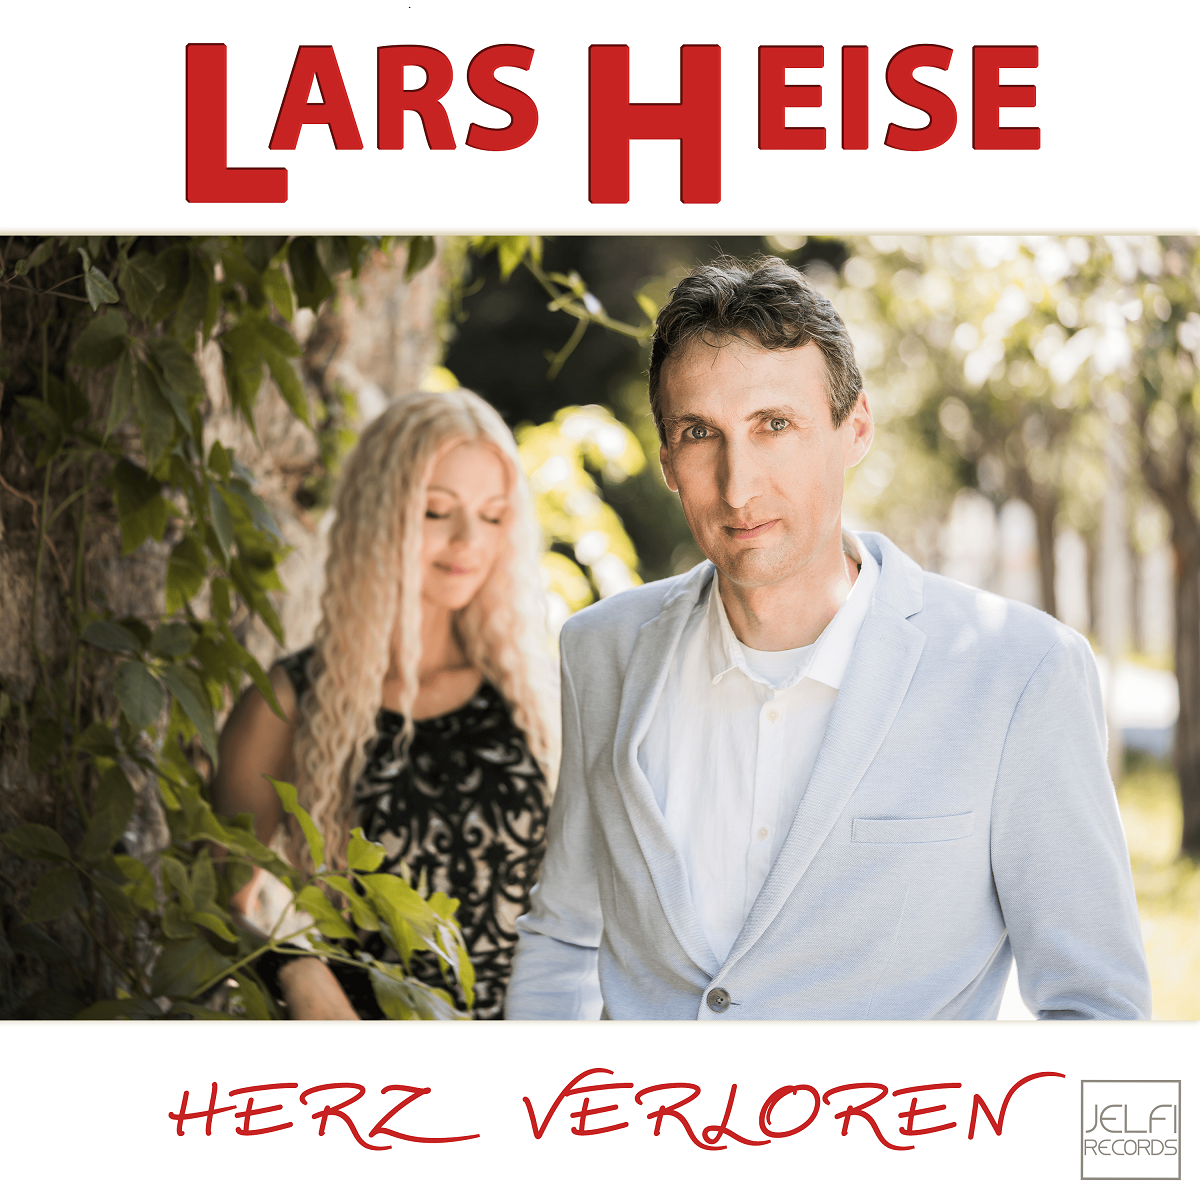 Lars Heise - Herzverloren - Cover.png